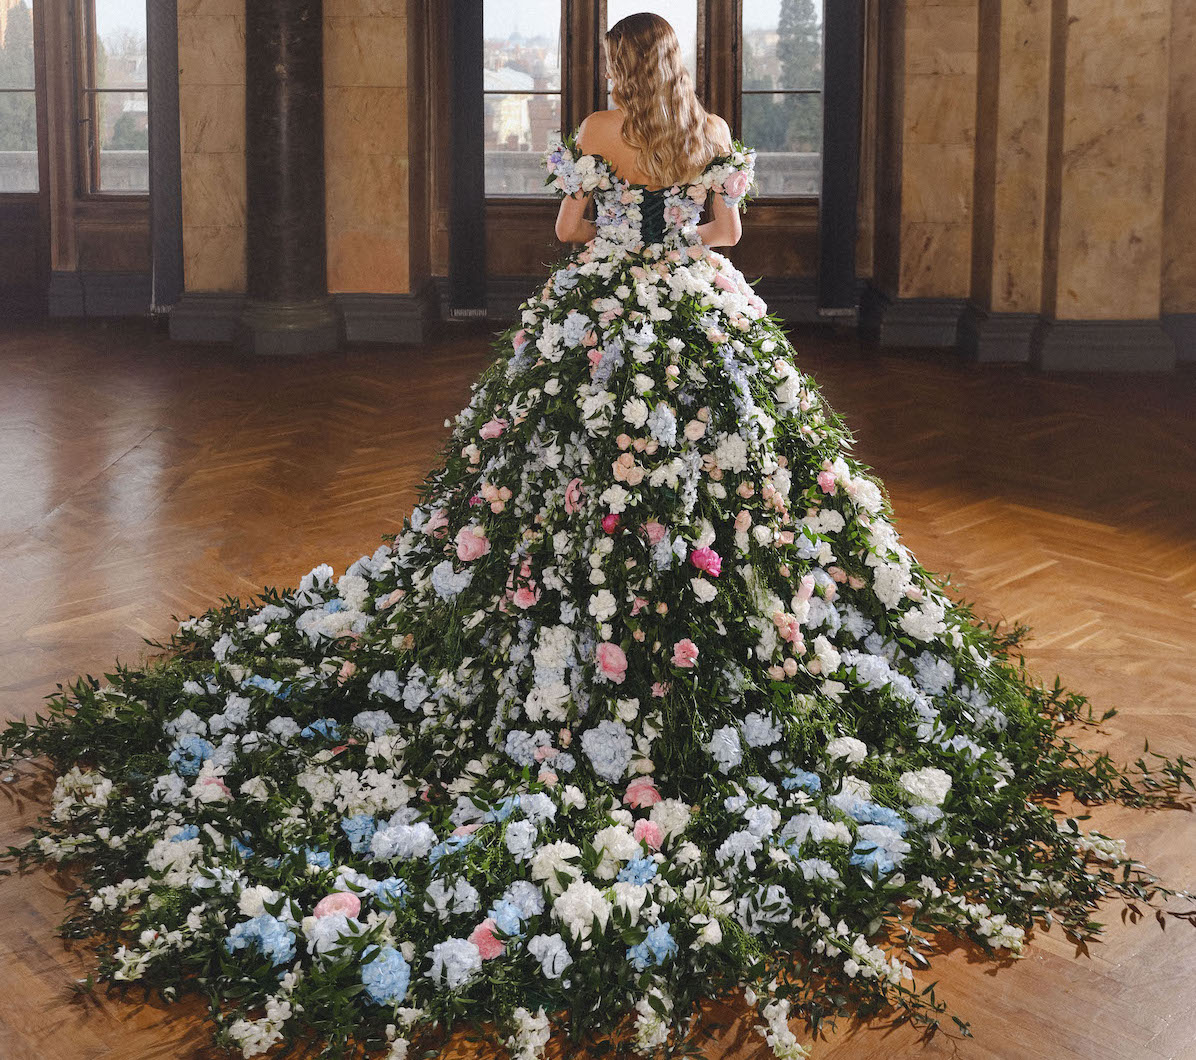 Природа в моде: Vladiyan Royal удивил мир уникальным свадебным платьем из живых цветов.